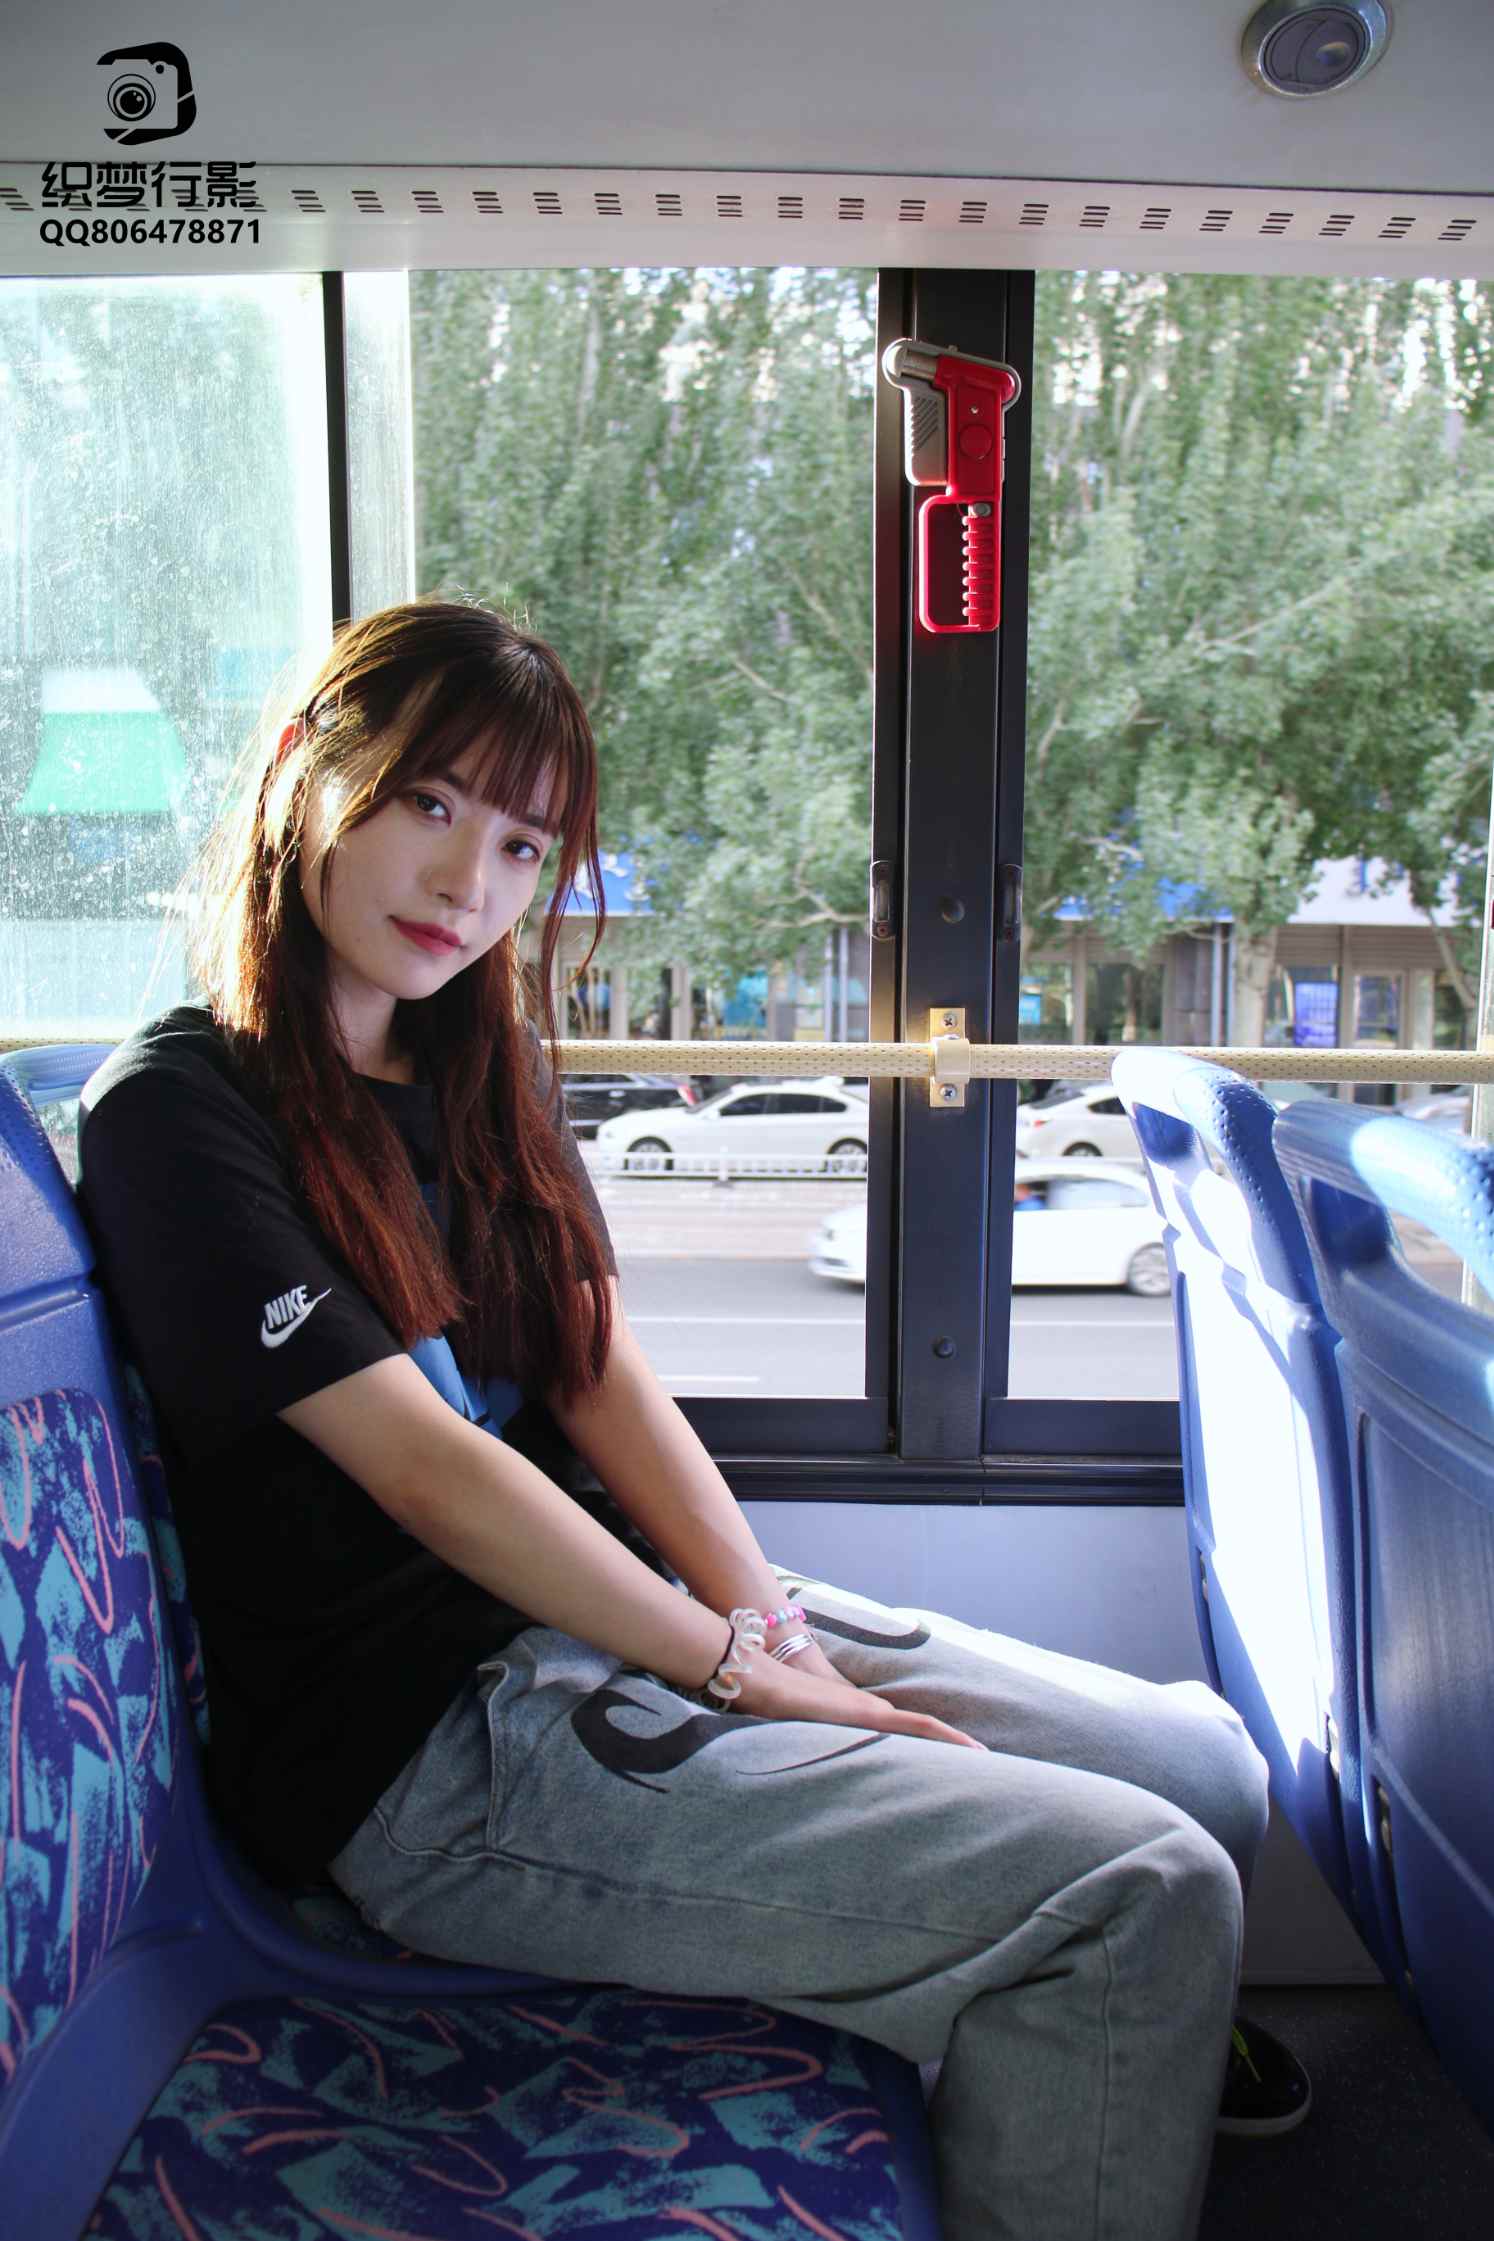 [织梦映像]城市公交-开往幸福的列车